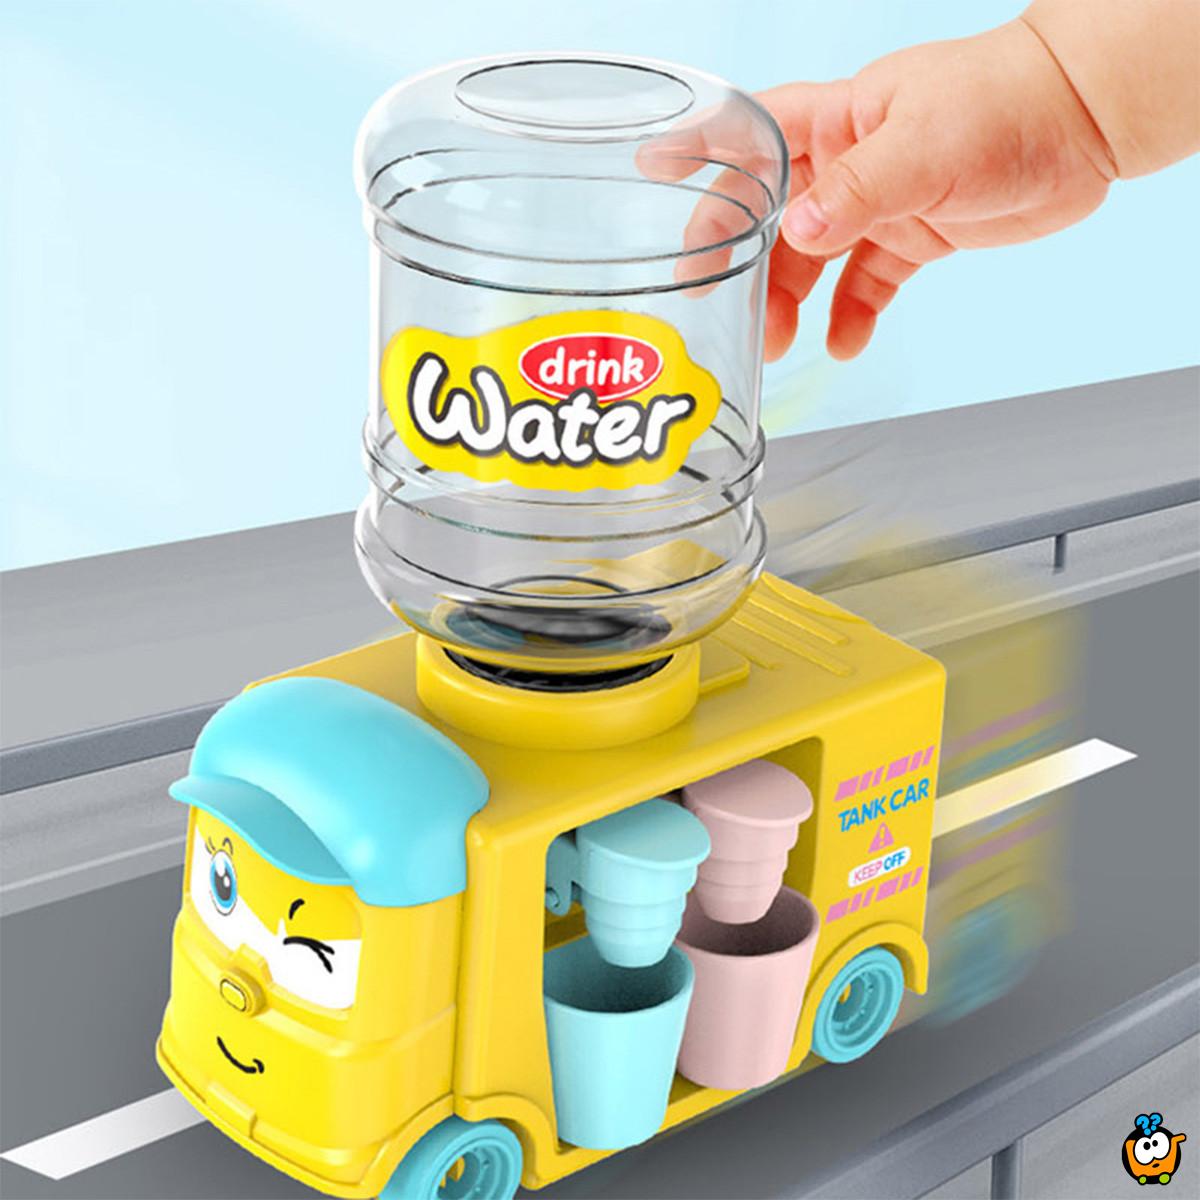 Veseli kamion - dupla mini točilica vode